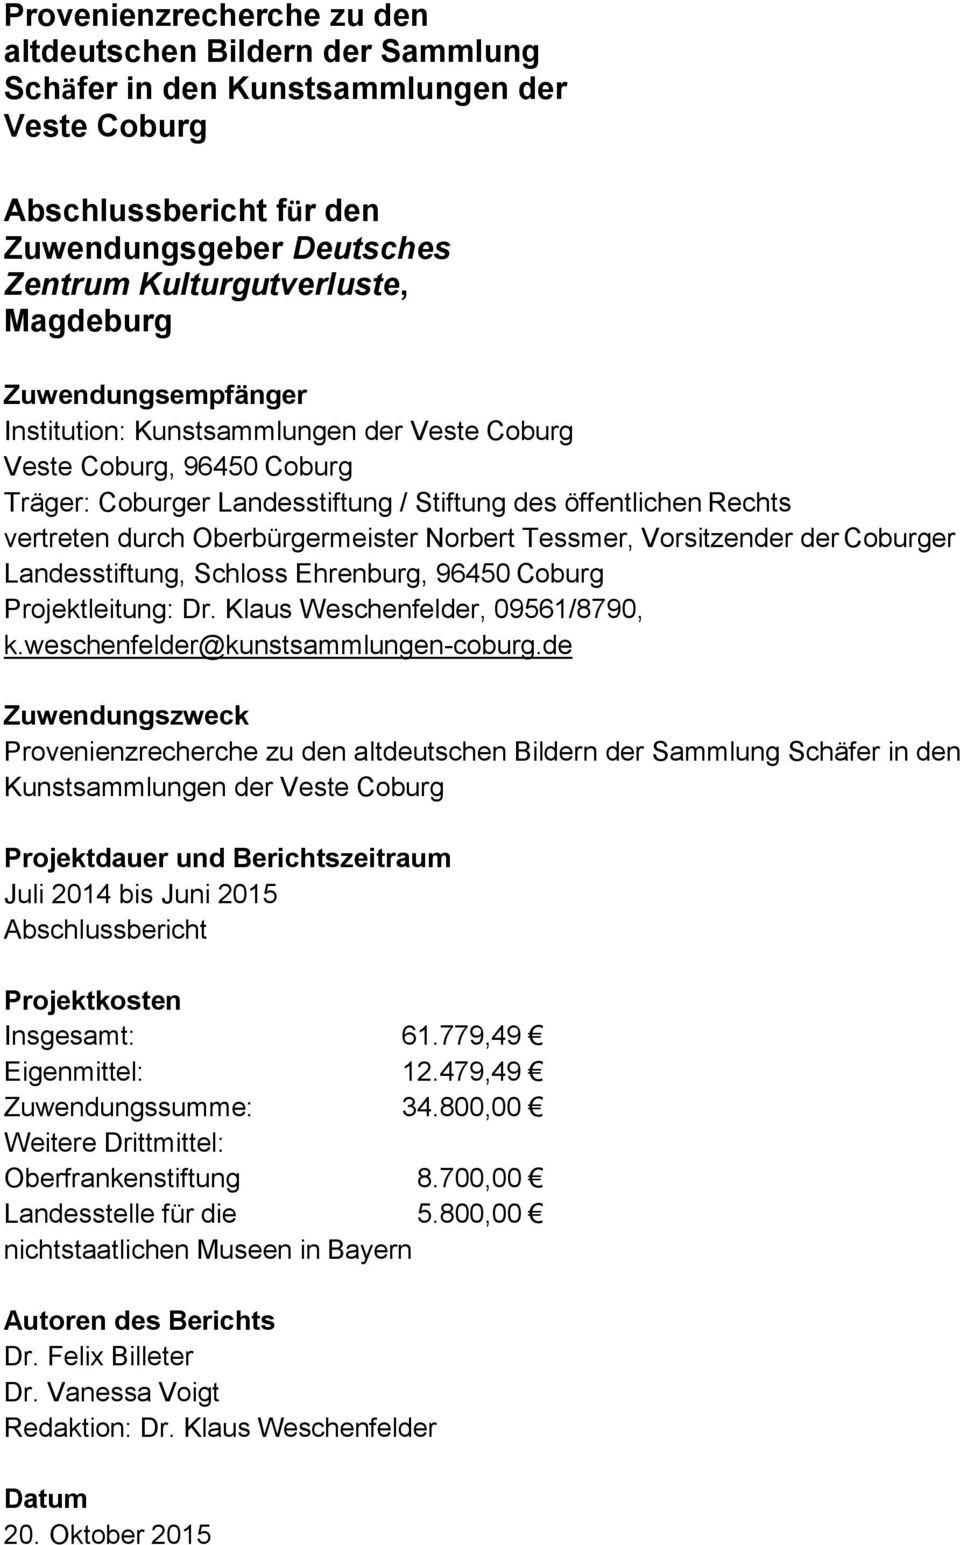 Norbert Tessmer, Vorsitzender der Coburger Landesstiftung, Schloss Ehrenburg, 96450 Coburg Projektleitung: Dr. Klaus Weschenfelder, 09561/8790, k.weschenfelder@kunstsammlungen-coburg.